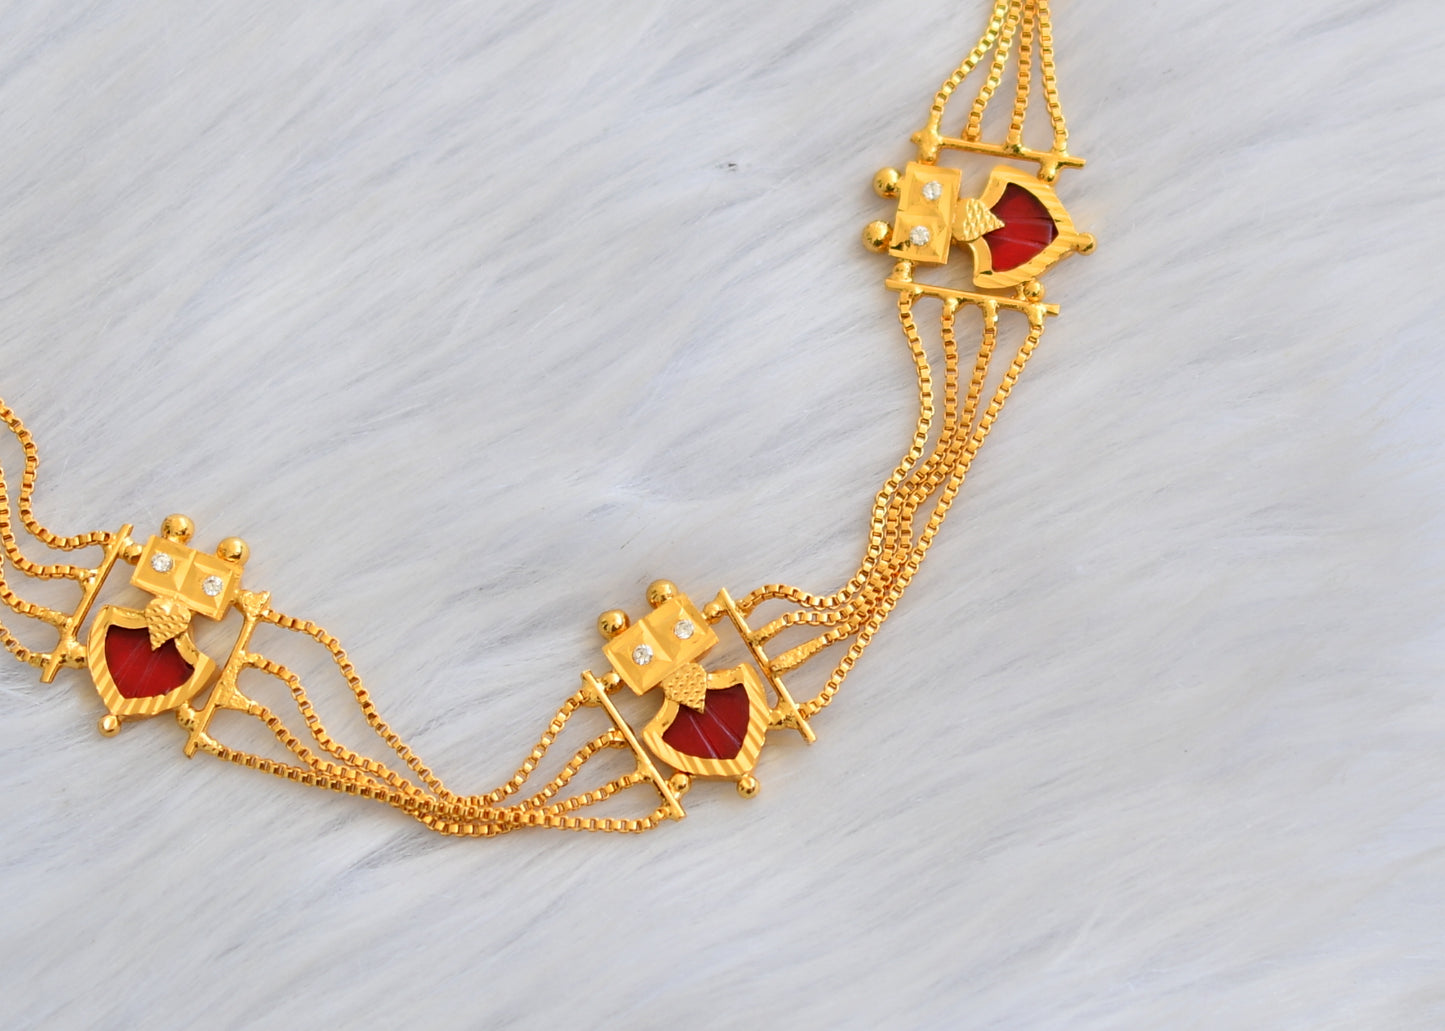 Gold tone white-red palakka Kerala style choker/necklace dj-40331